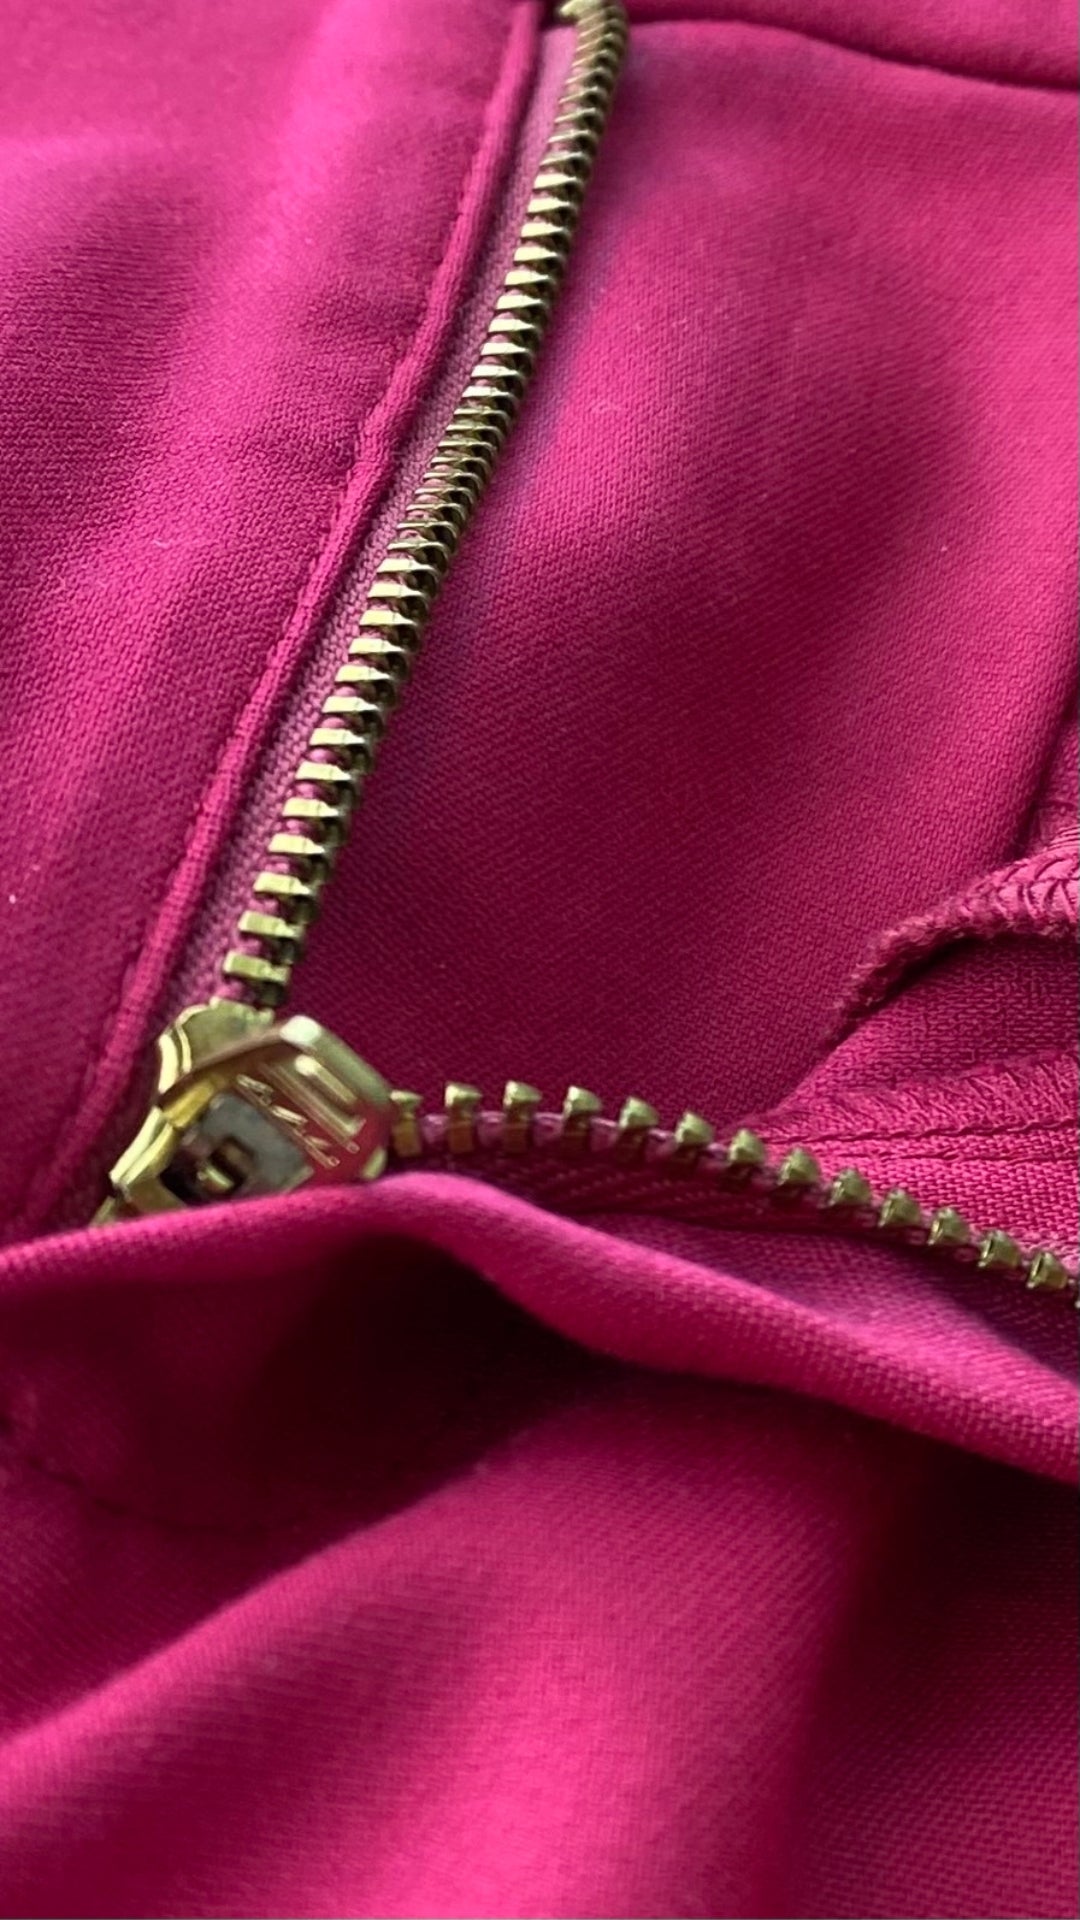 Pantalon écourté rose cerise Mos Mosh, taille 34 (européen - 25-xs). Vue de près de la fermeture éclair.